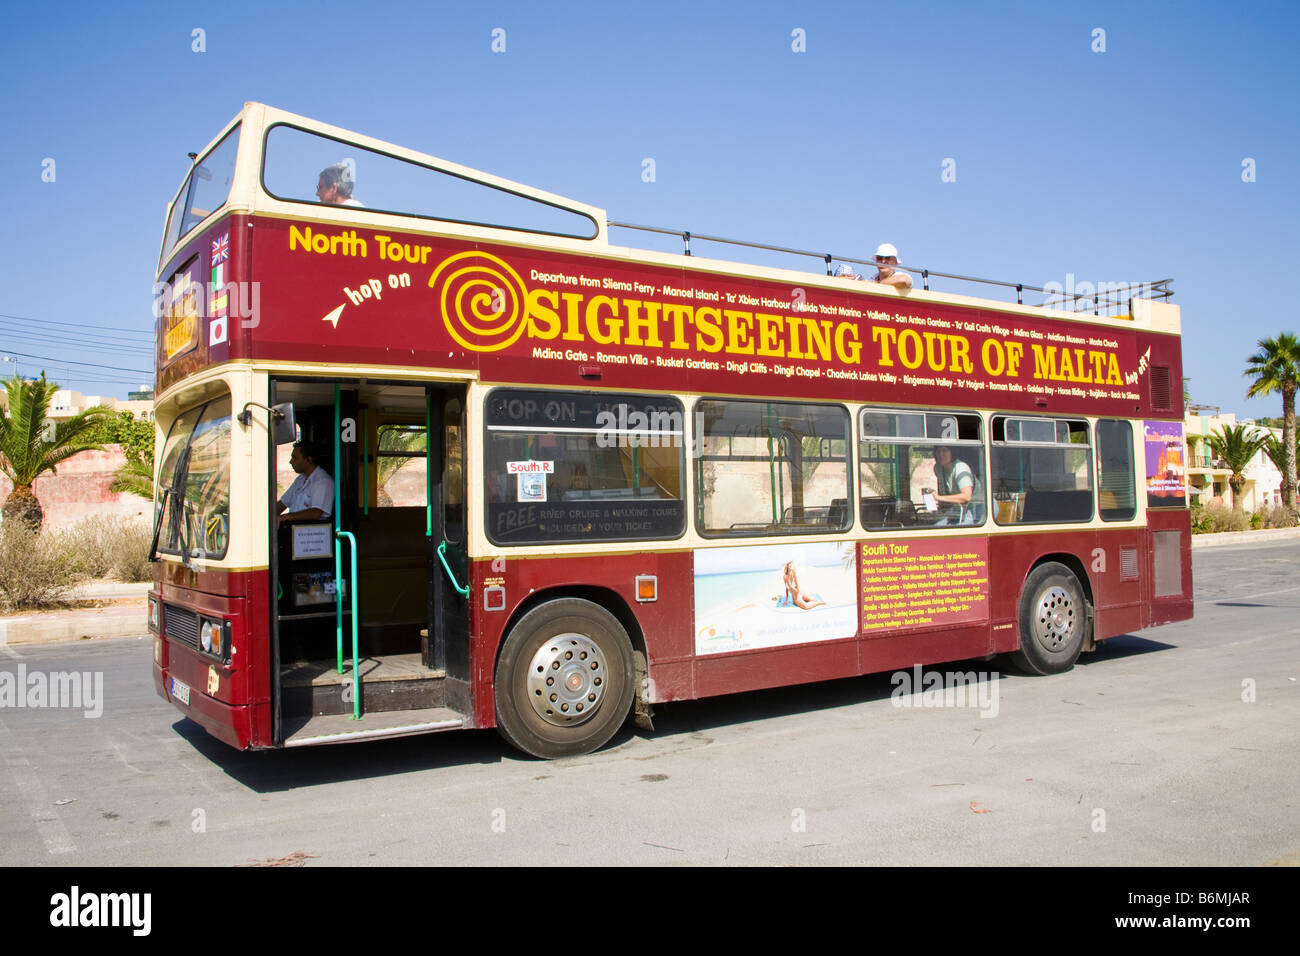 Malta sightseeing tour bus, Marsaxlokk, Malta Stock Photo